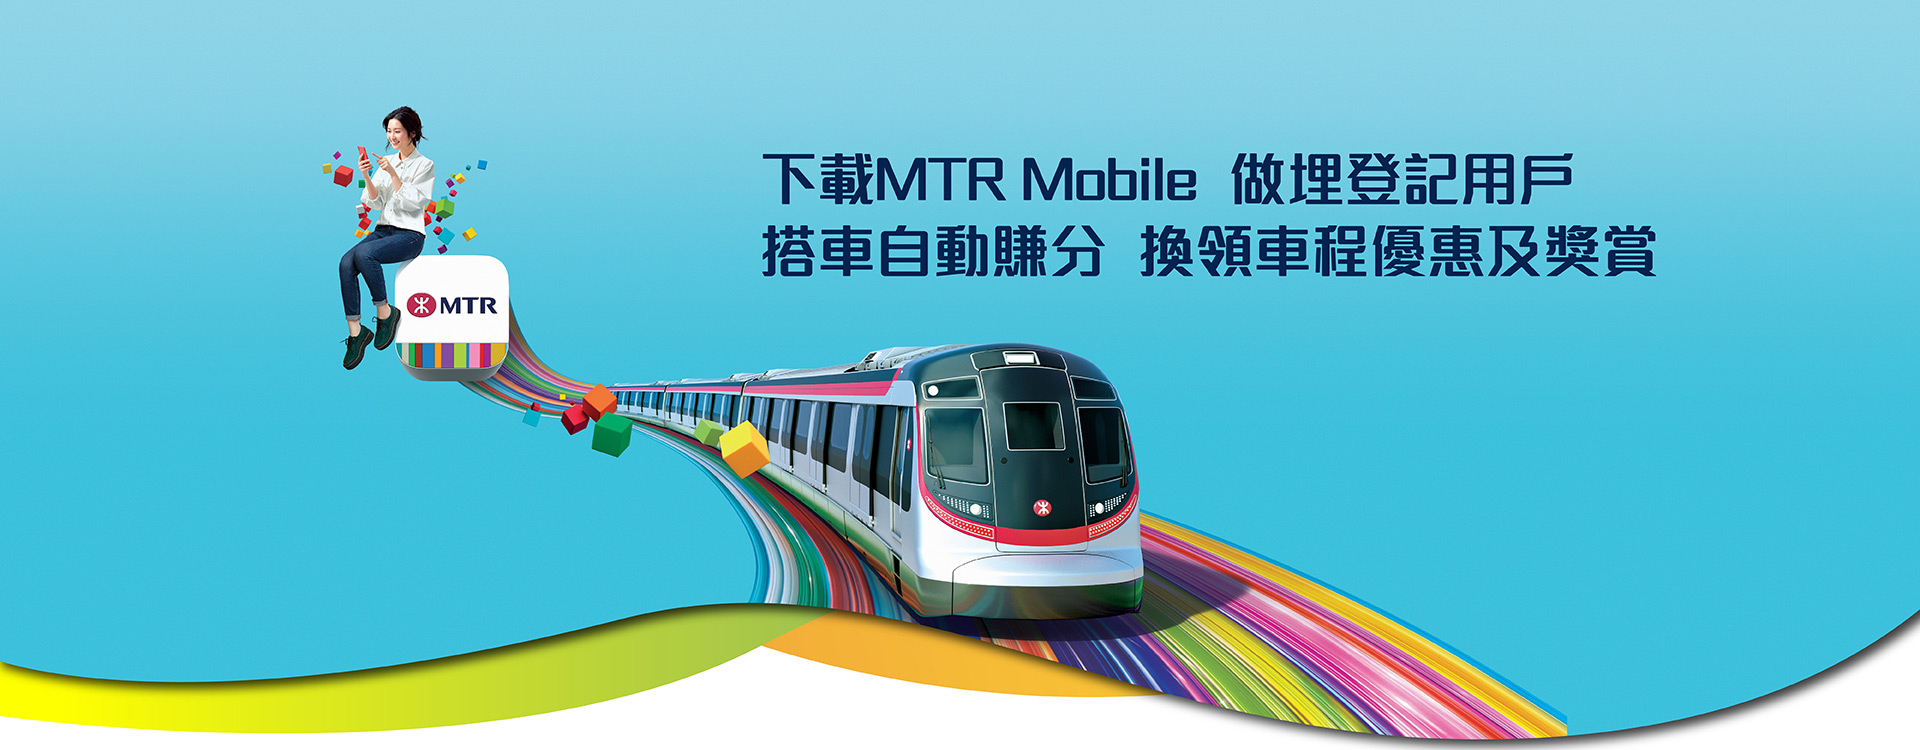 下載MTR Mobile 做埋登記用戶 搭車自動賺分 換領車程優惠及獎賞